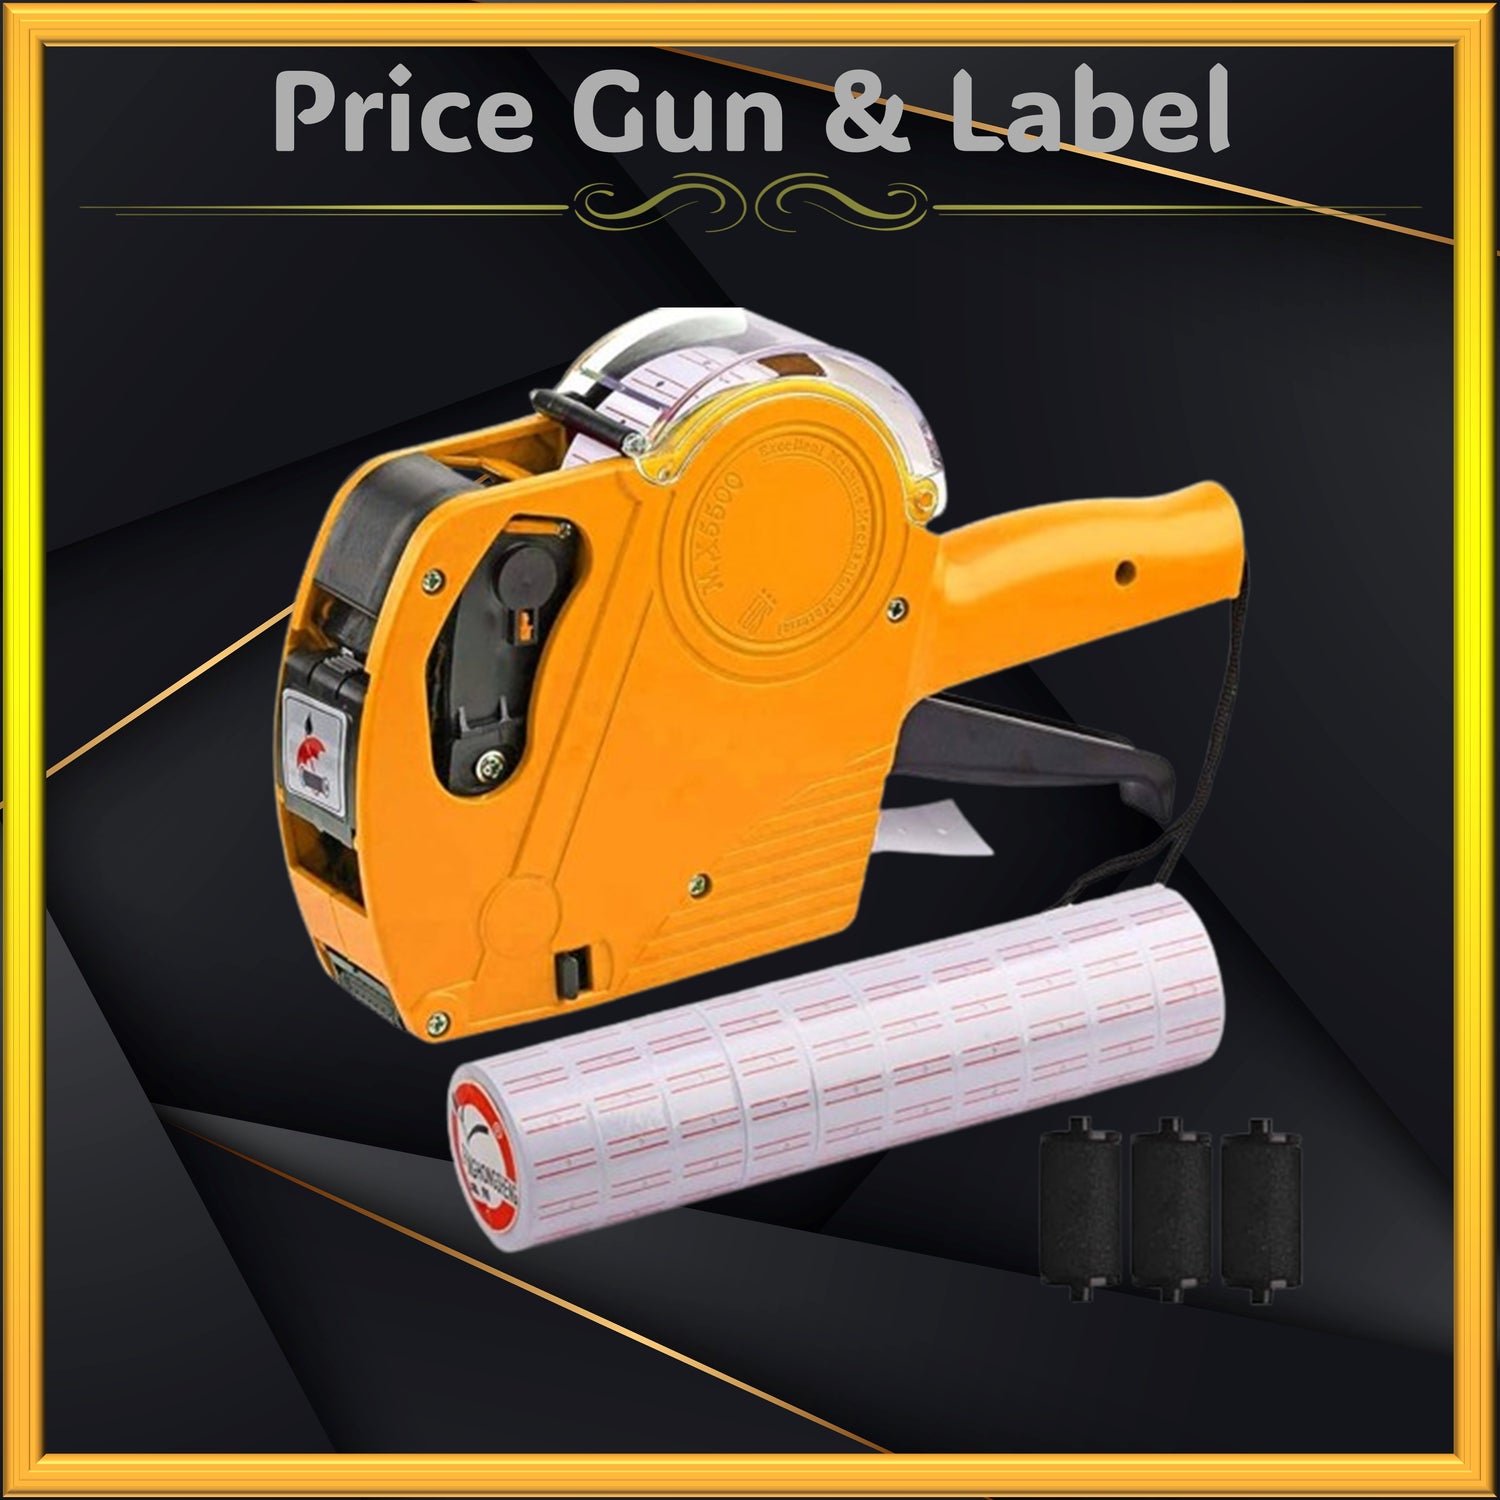 Price Gun & Label